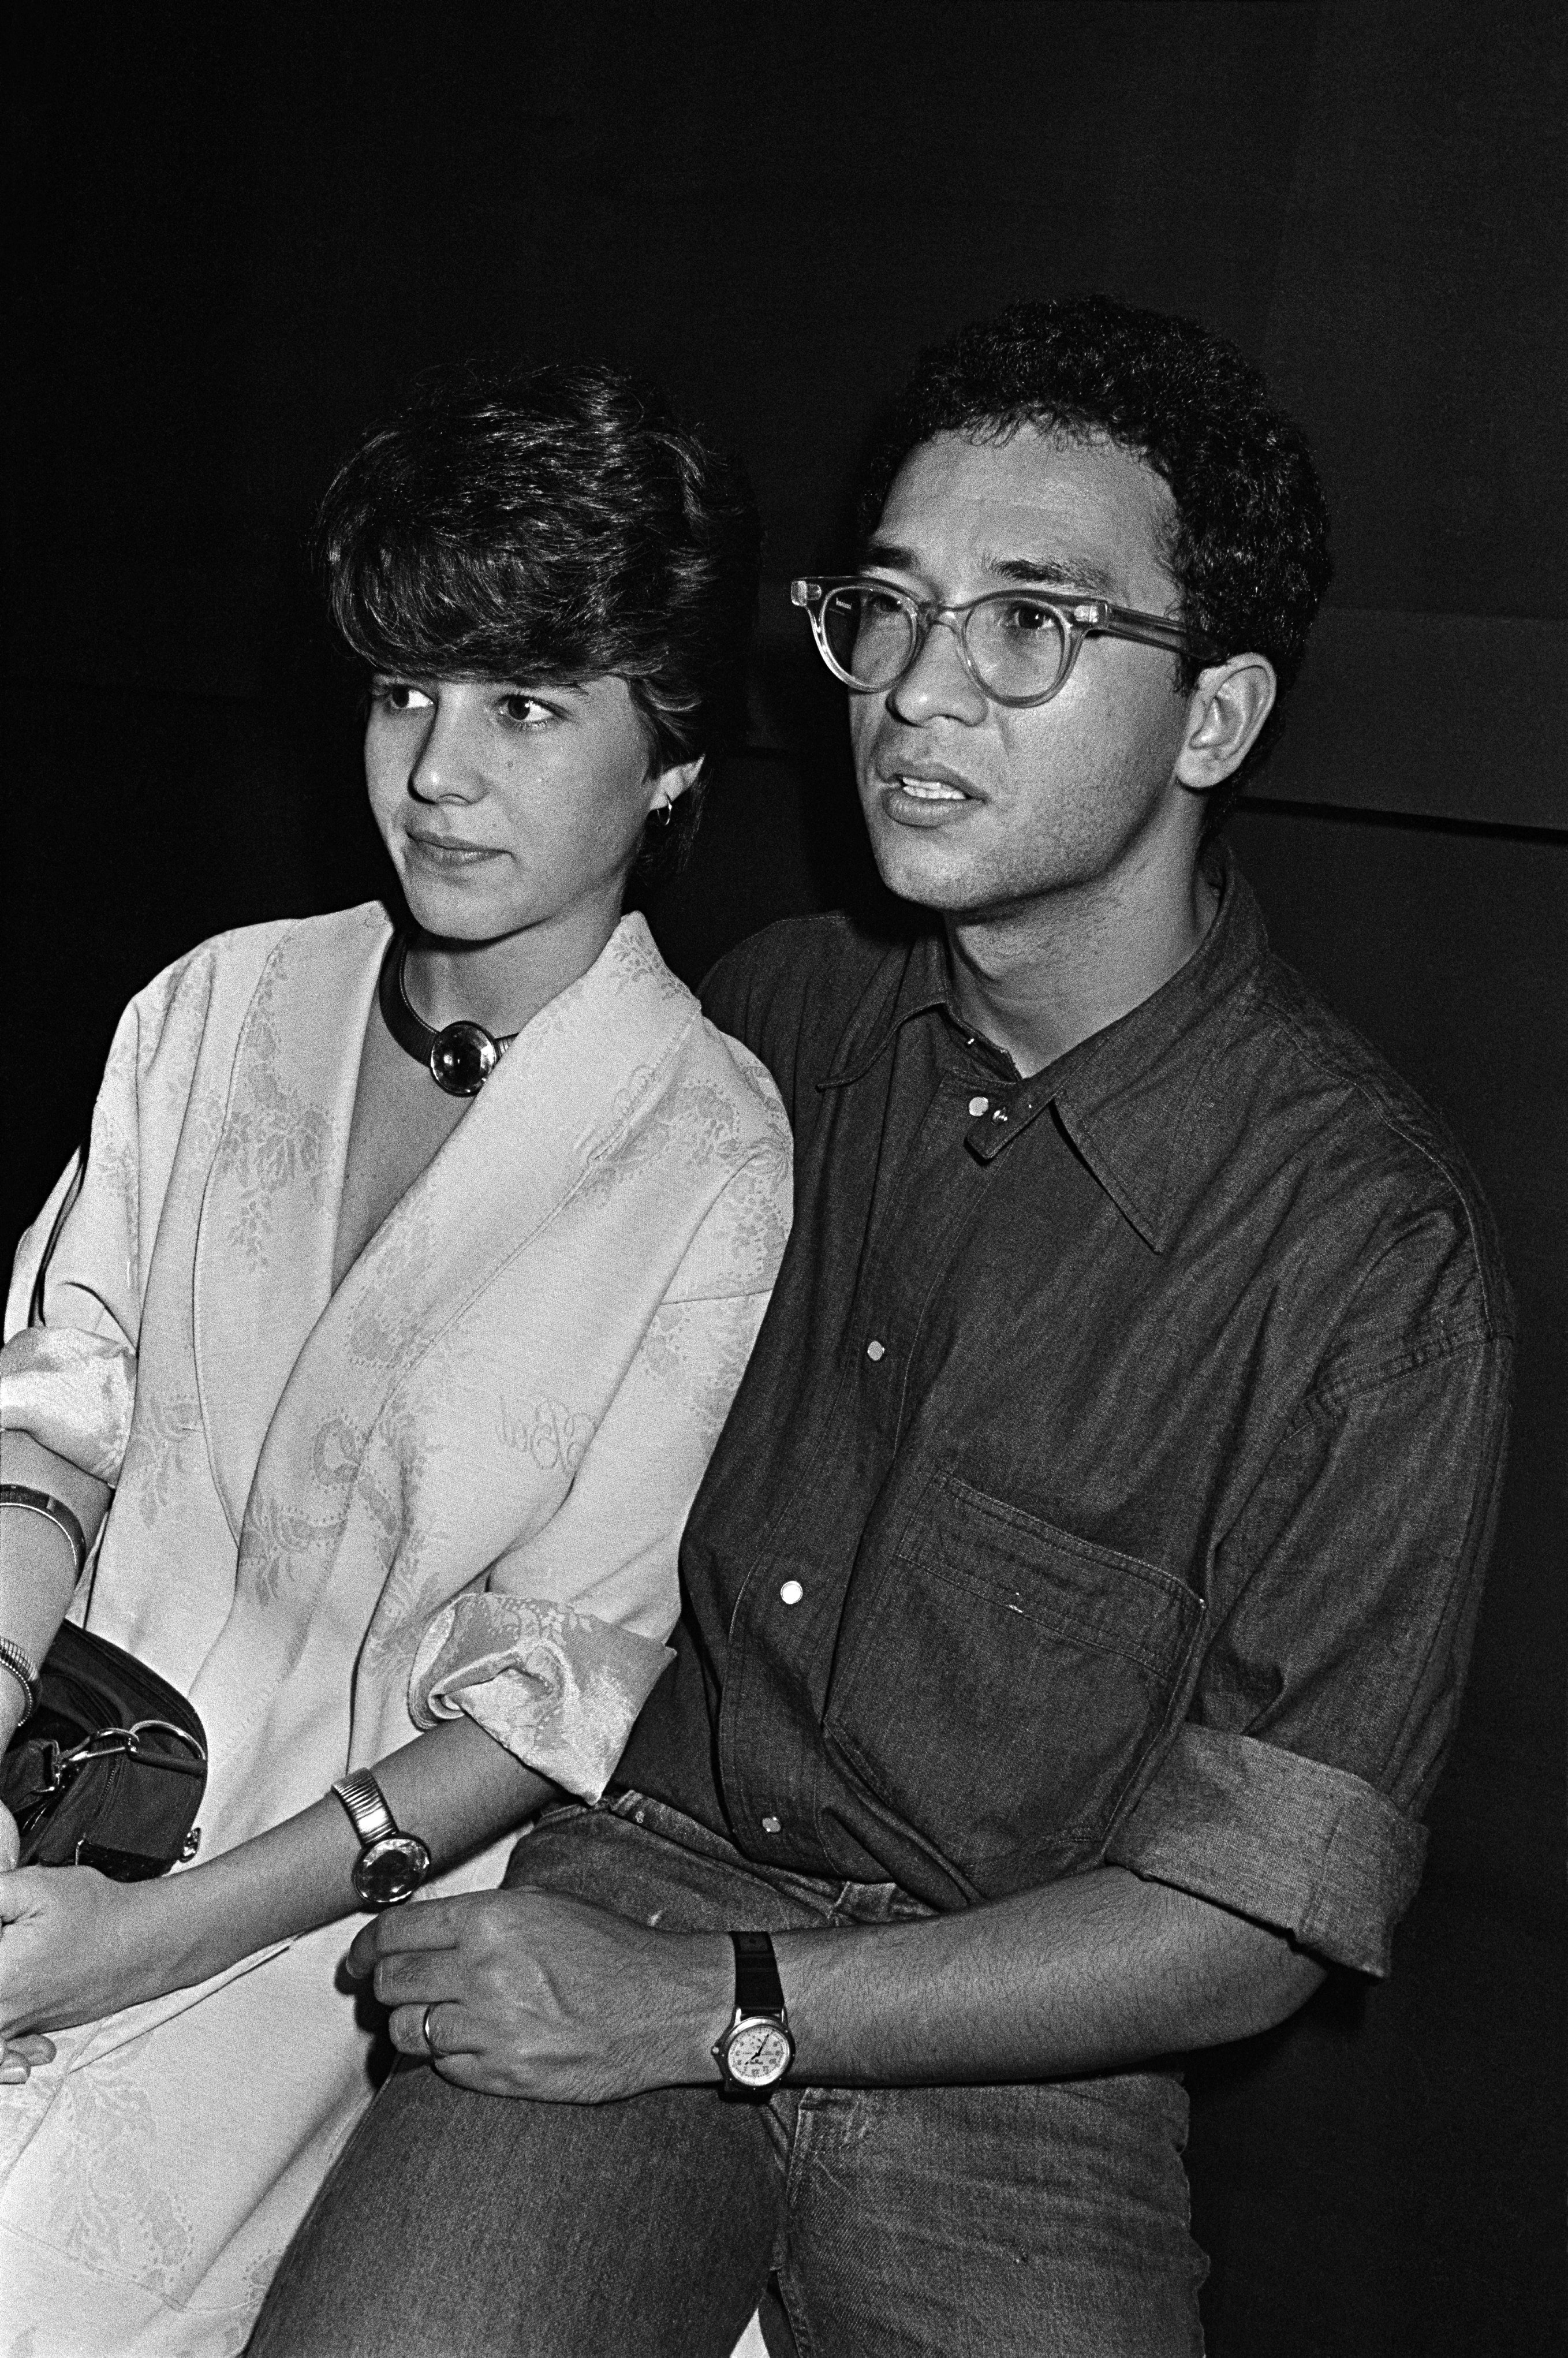 Paula Toller e Herbert Vianna, então um casal, comparecem ao show de Lulu Santos, em 1985 (Foto: Cristina Granato)